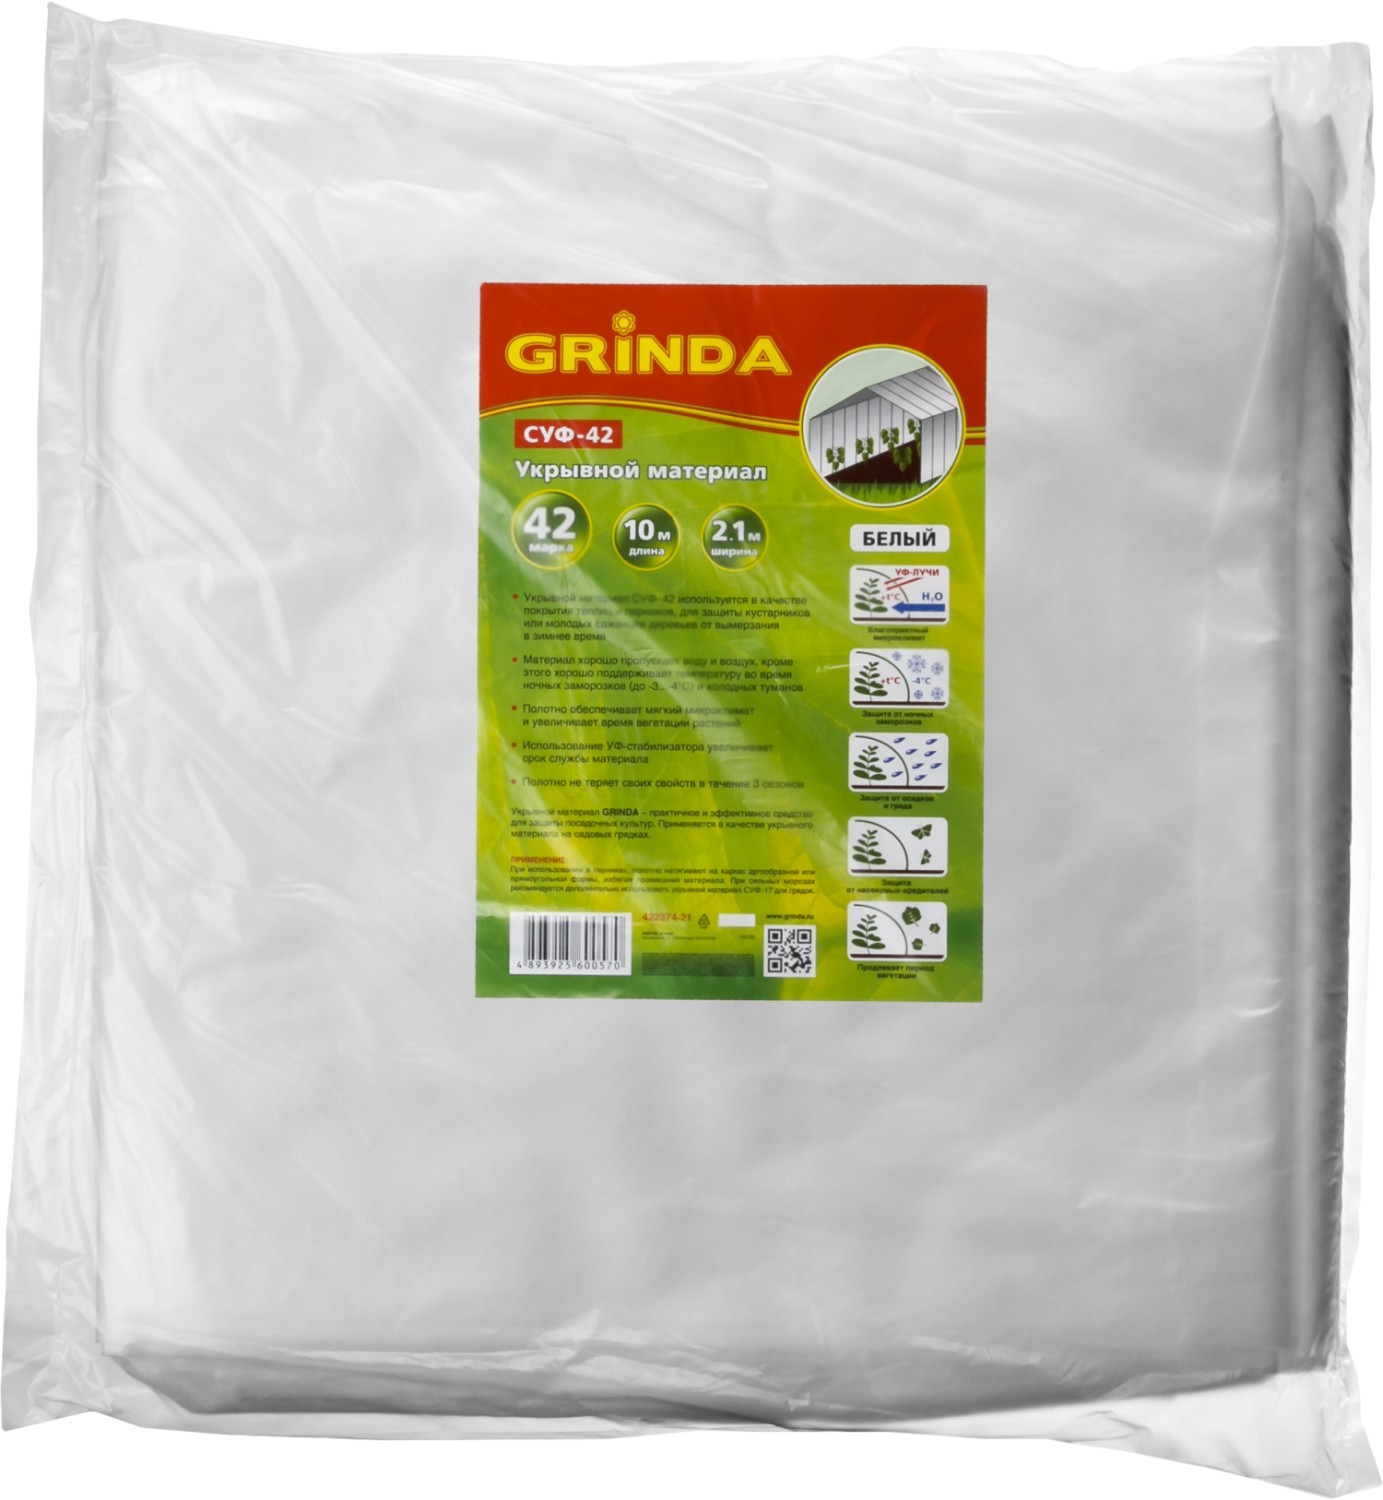 GRINDA СУФ-42, 2.1 x 10 м, белый, укрывной материал (422374-21)